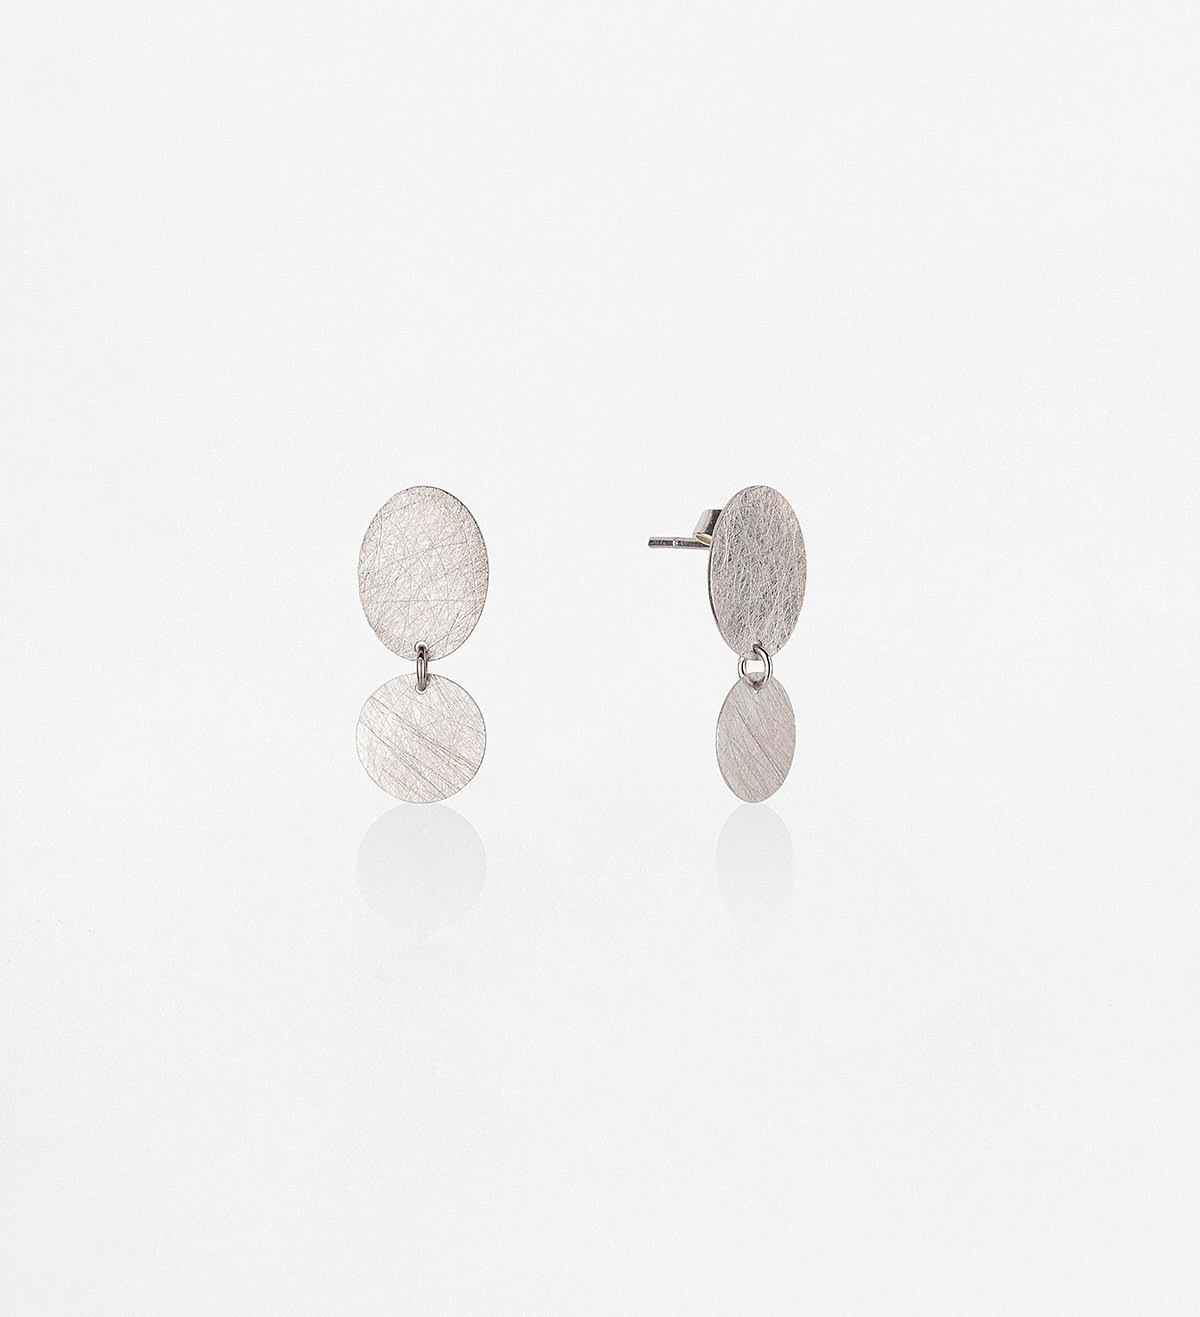 Silver earrings Party 22mm